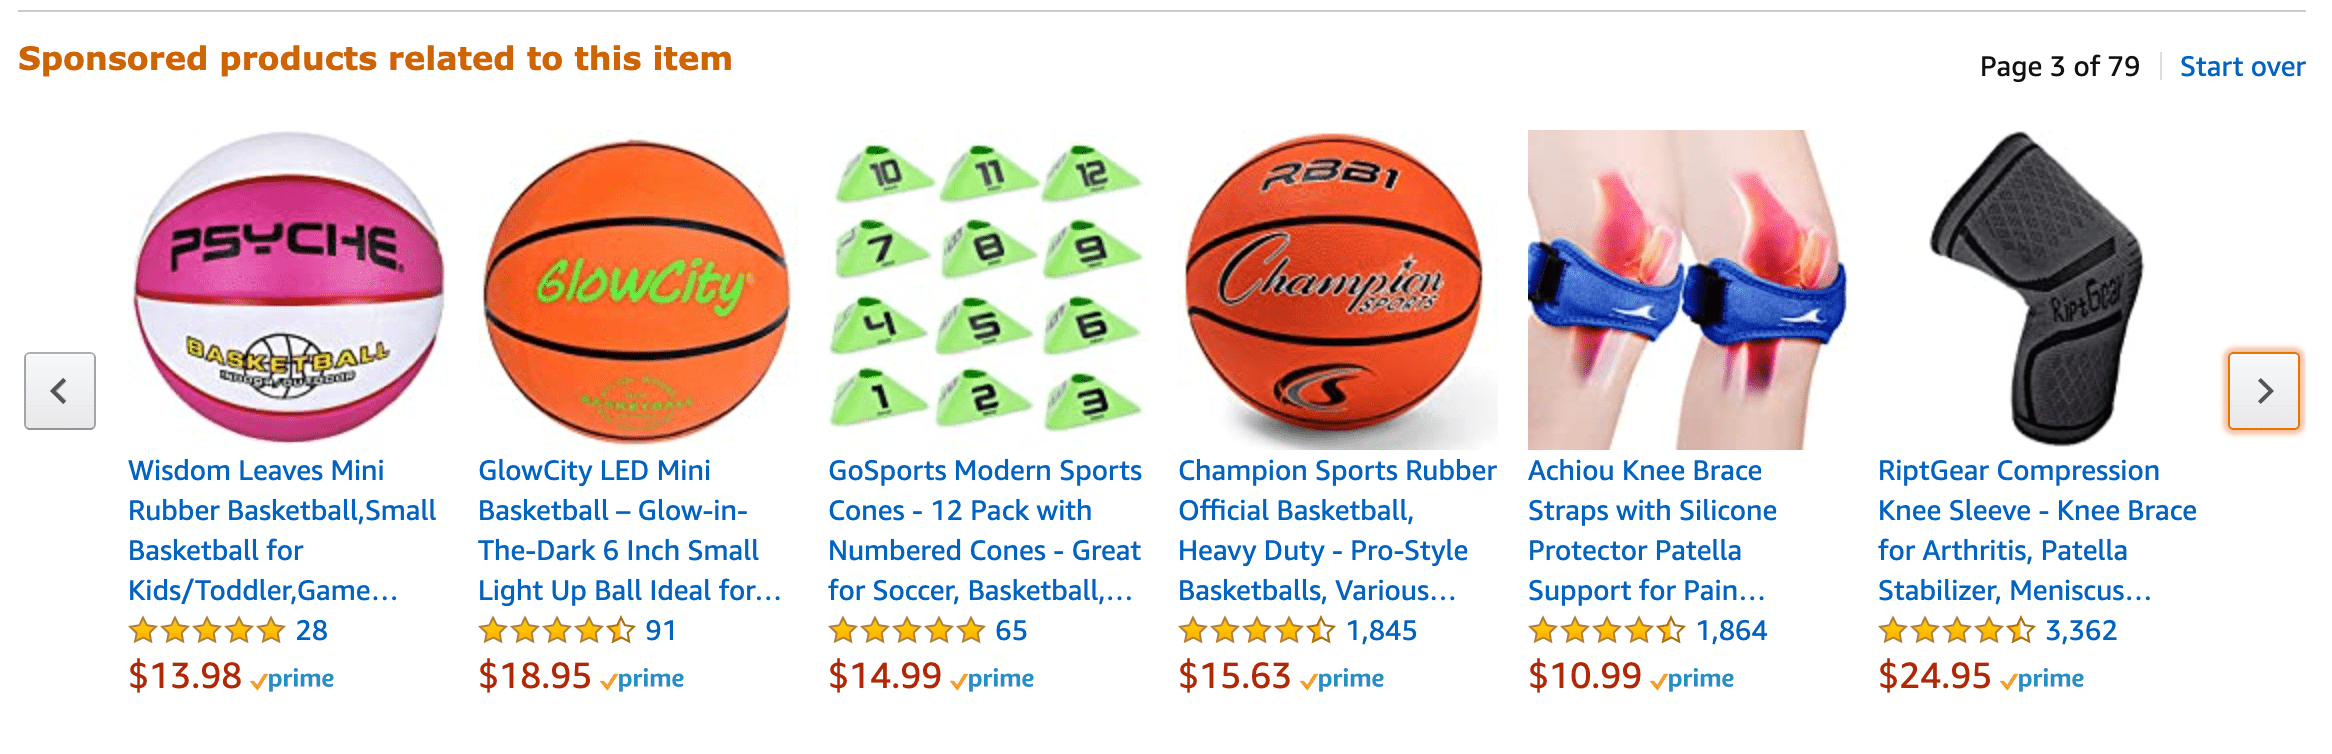 gesponsorde producten met betrekking tot basketbal op amazon